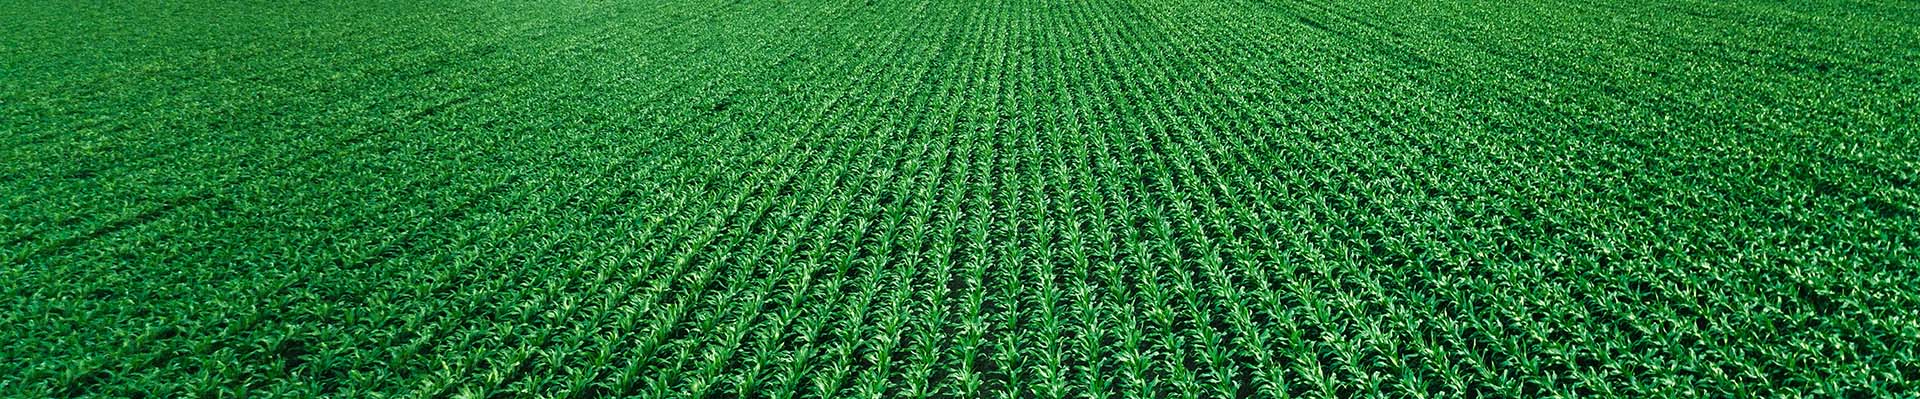 Un campo de maíz verde